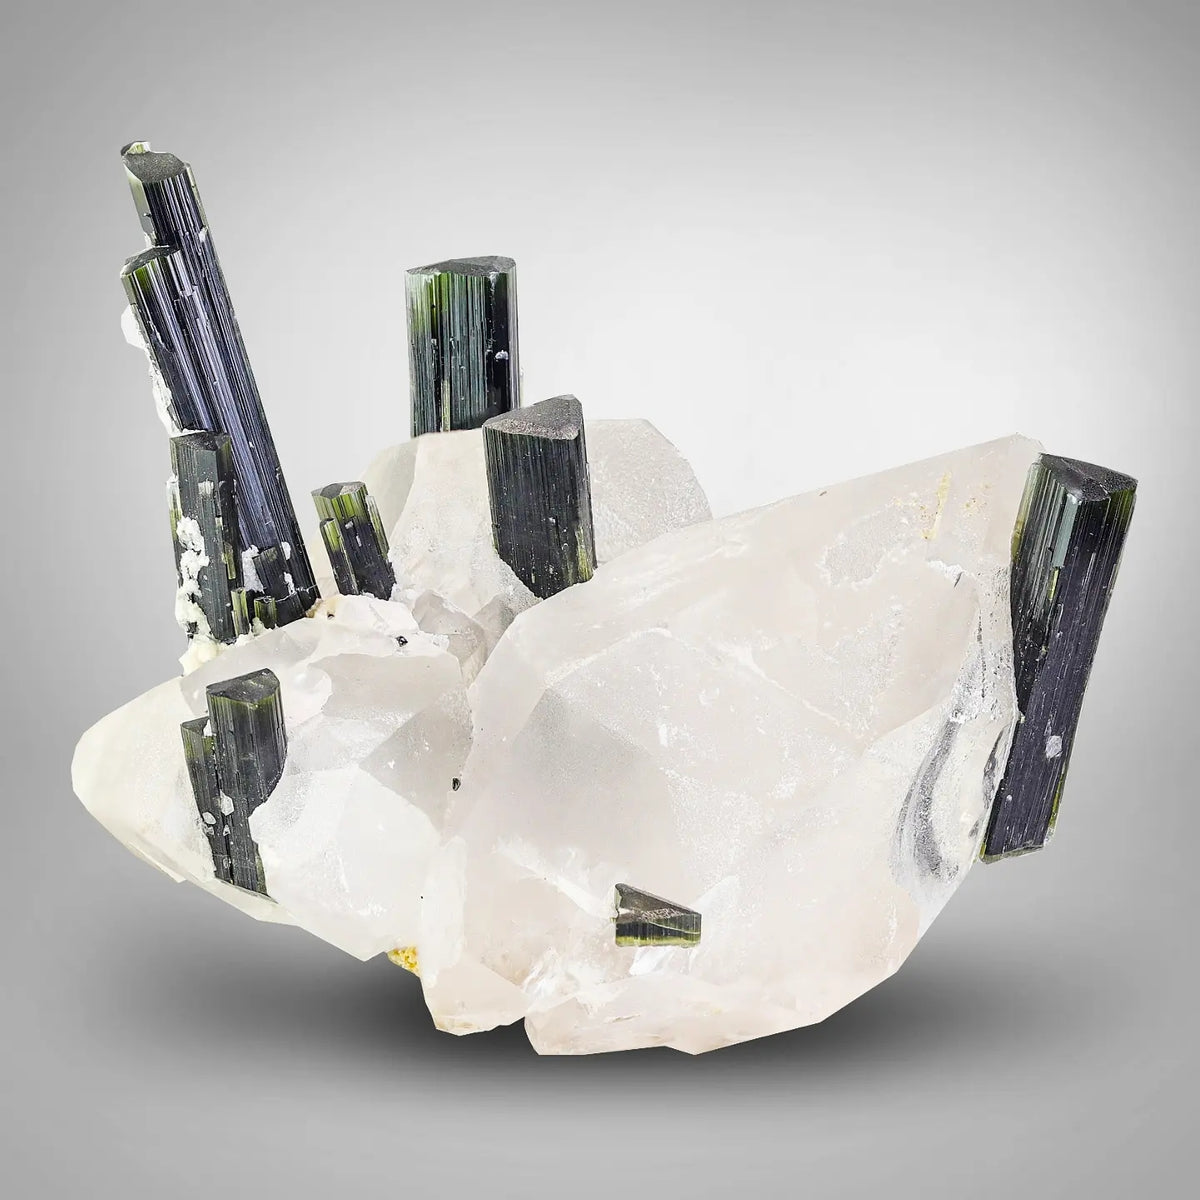 Green Cap Tourmaline Crystals on Quartz